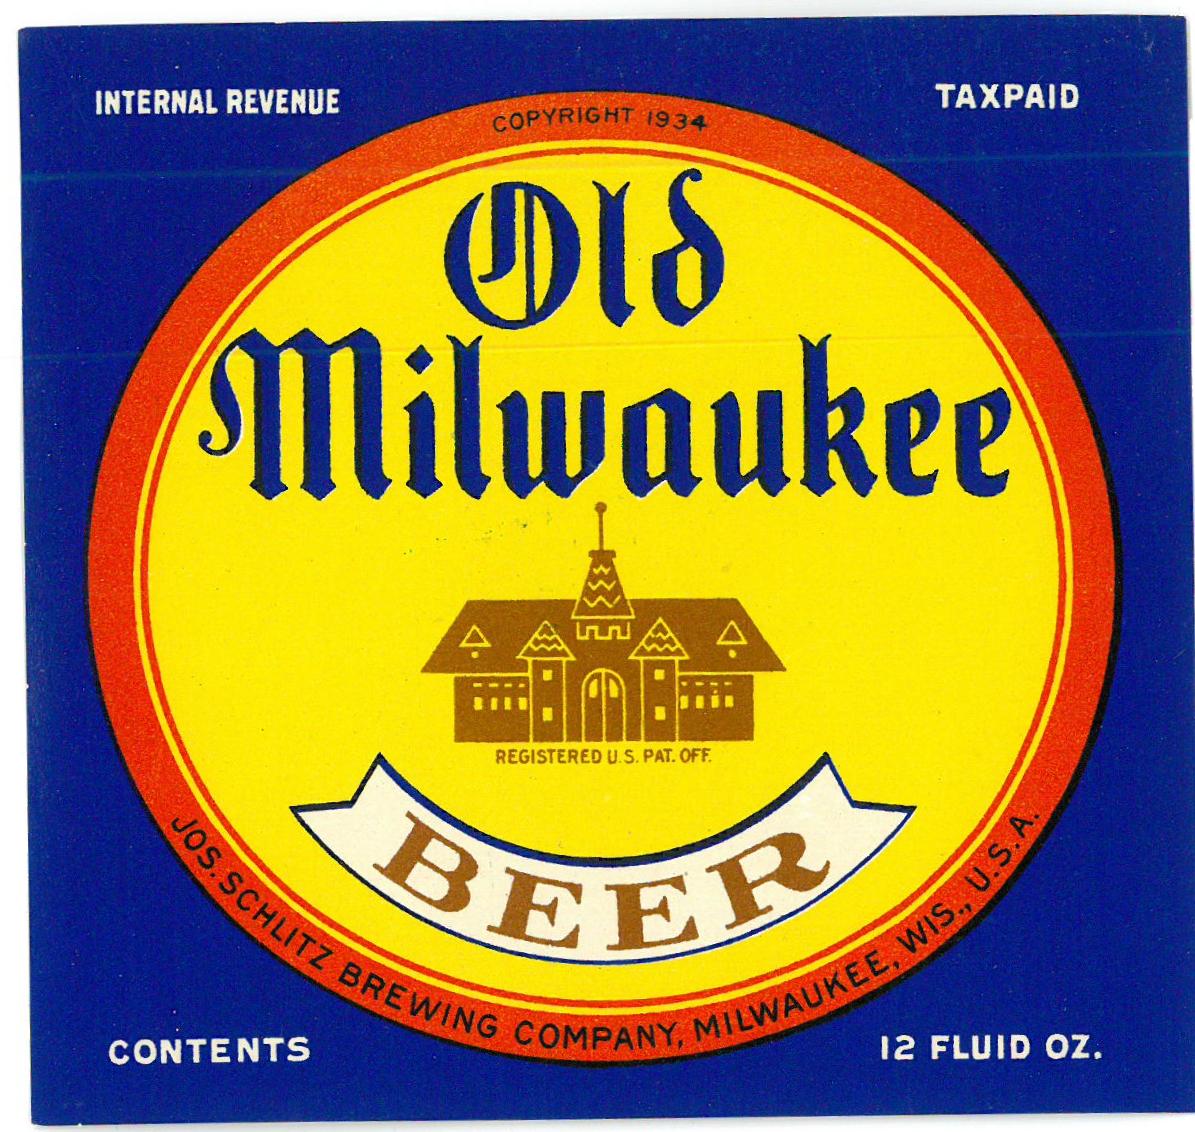 Lot of 5 1980's Old Milwaukee Beer/Light Beer coasters #135B Milwaukee Wi 